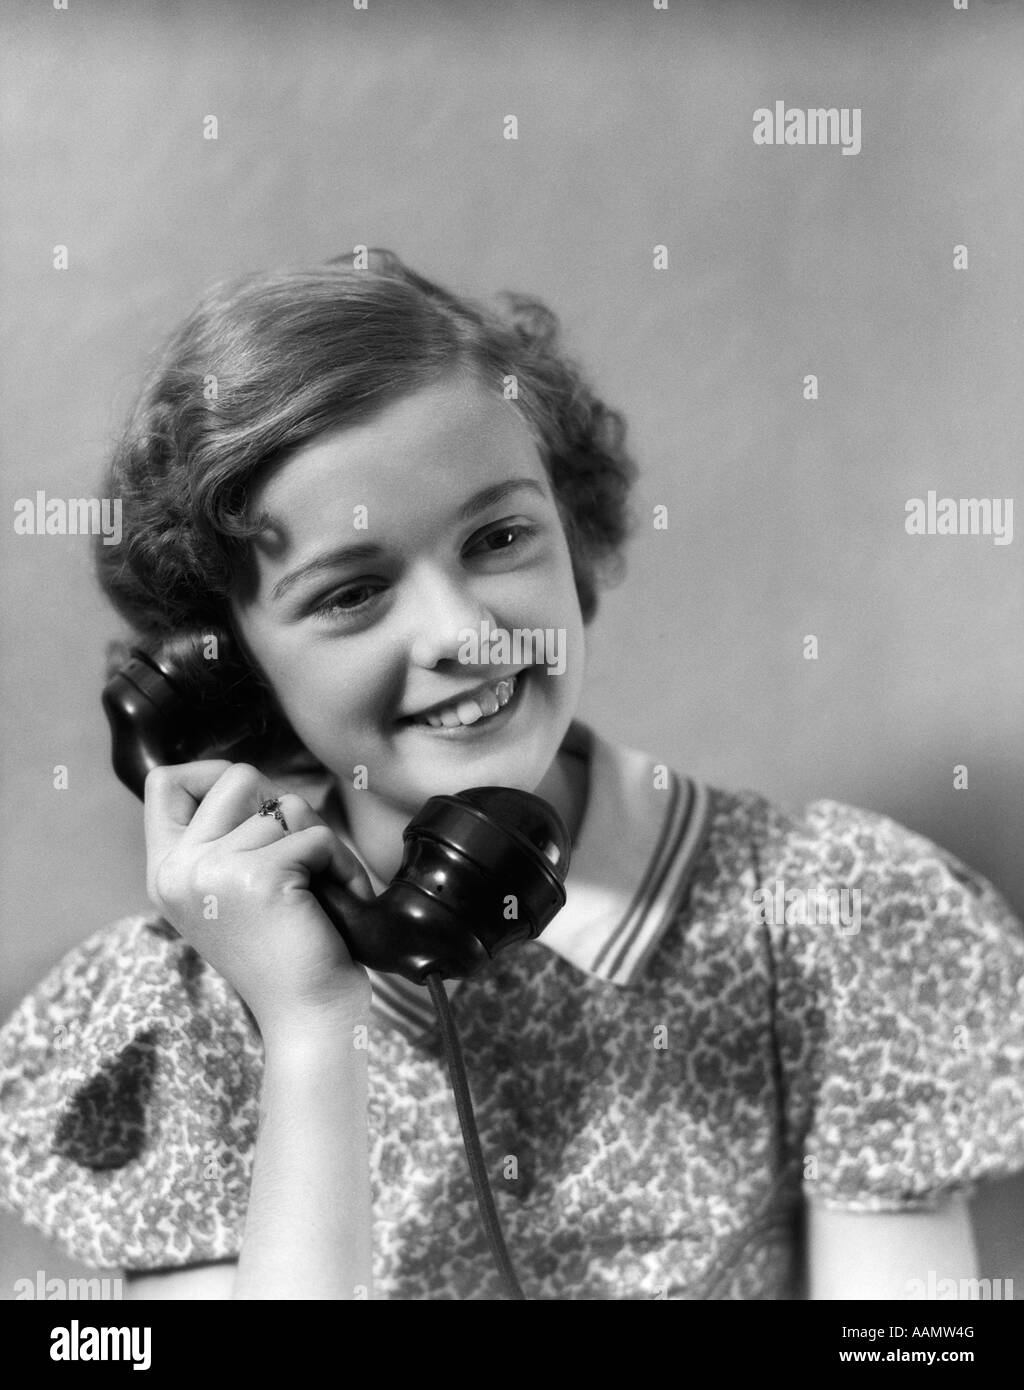 1930s TEEN GIRL SMILING BRUNETTE PRINT DRESS TALKING ON TELEPHONE Stock Photo